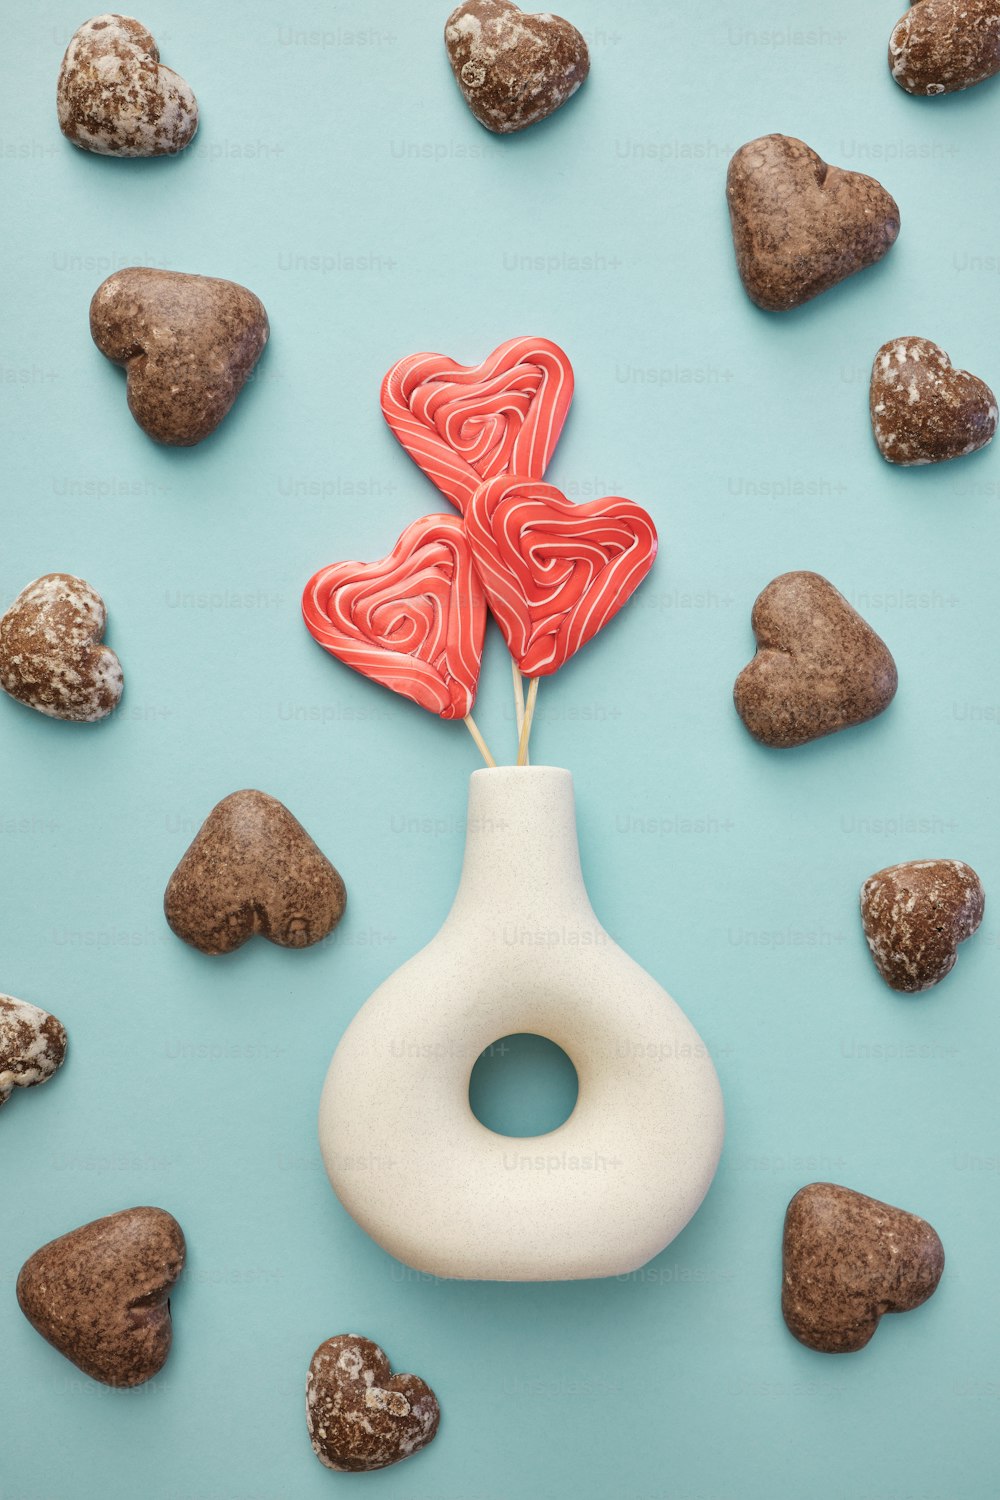 Un lecca-lecca a forma di cuore in un vaso circondato da rocce